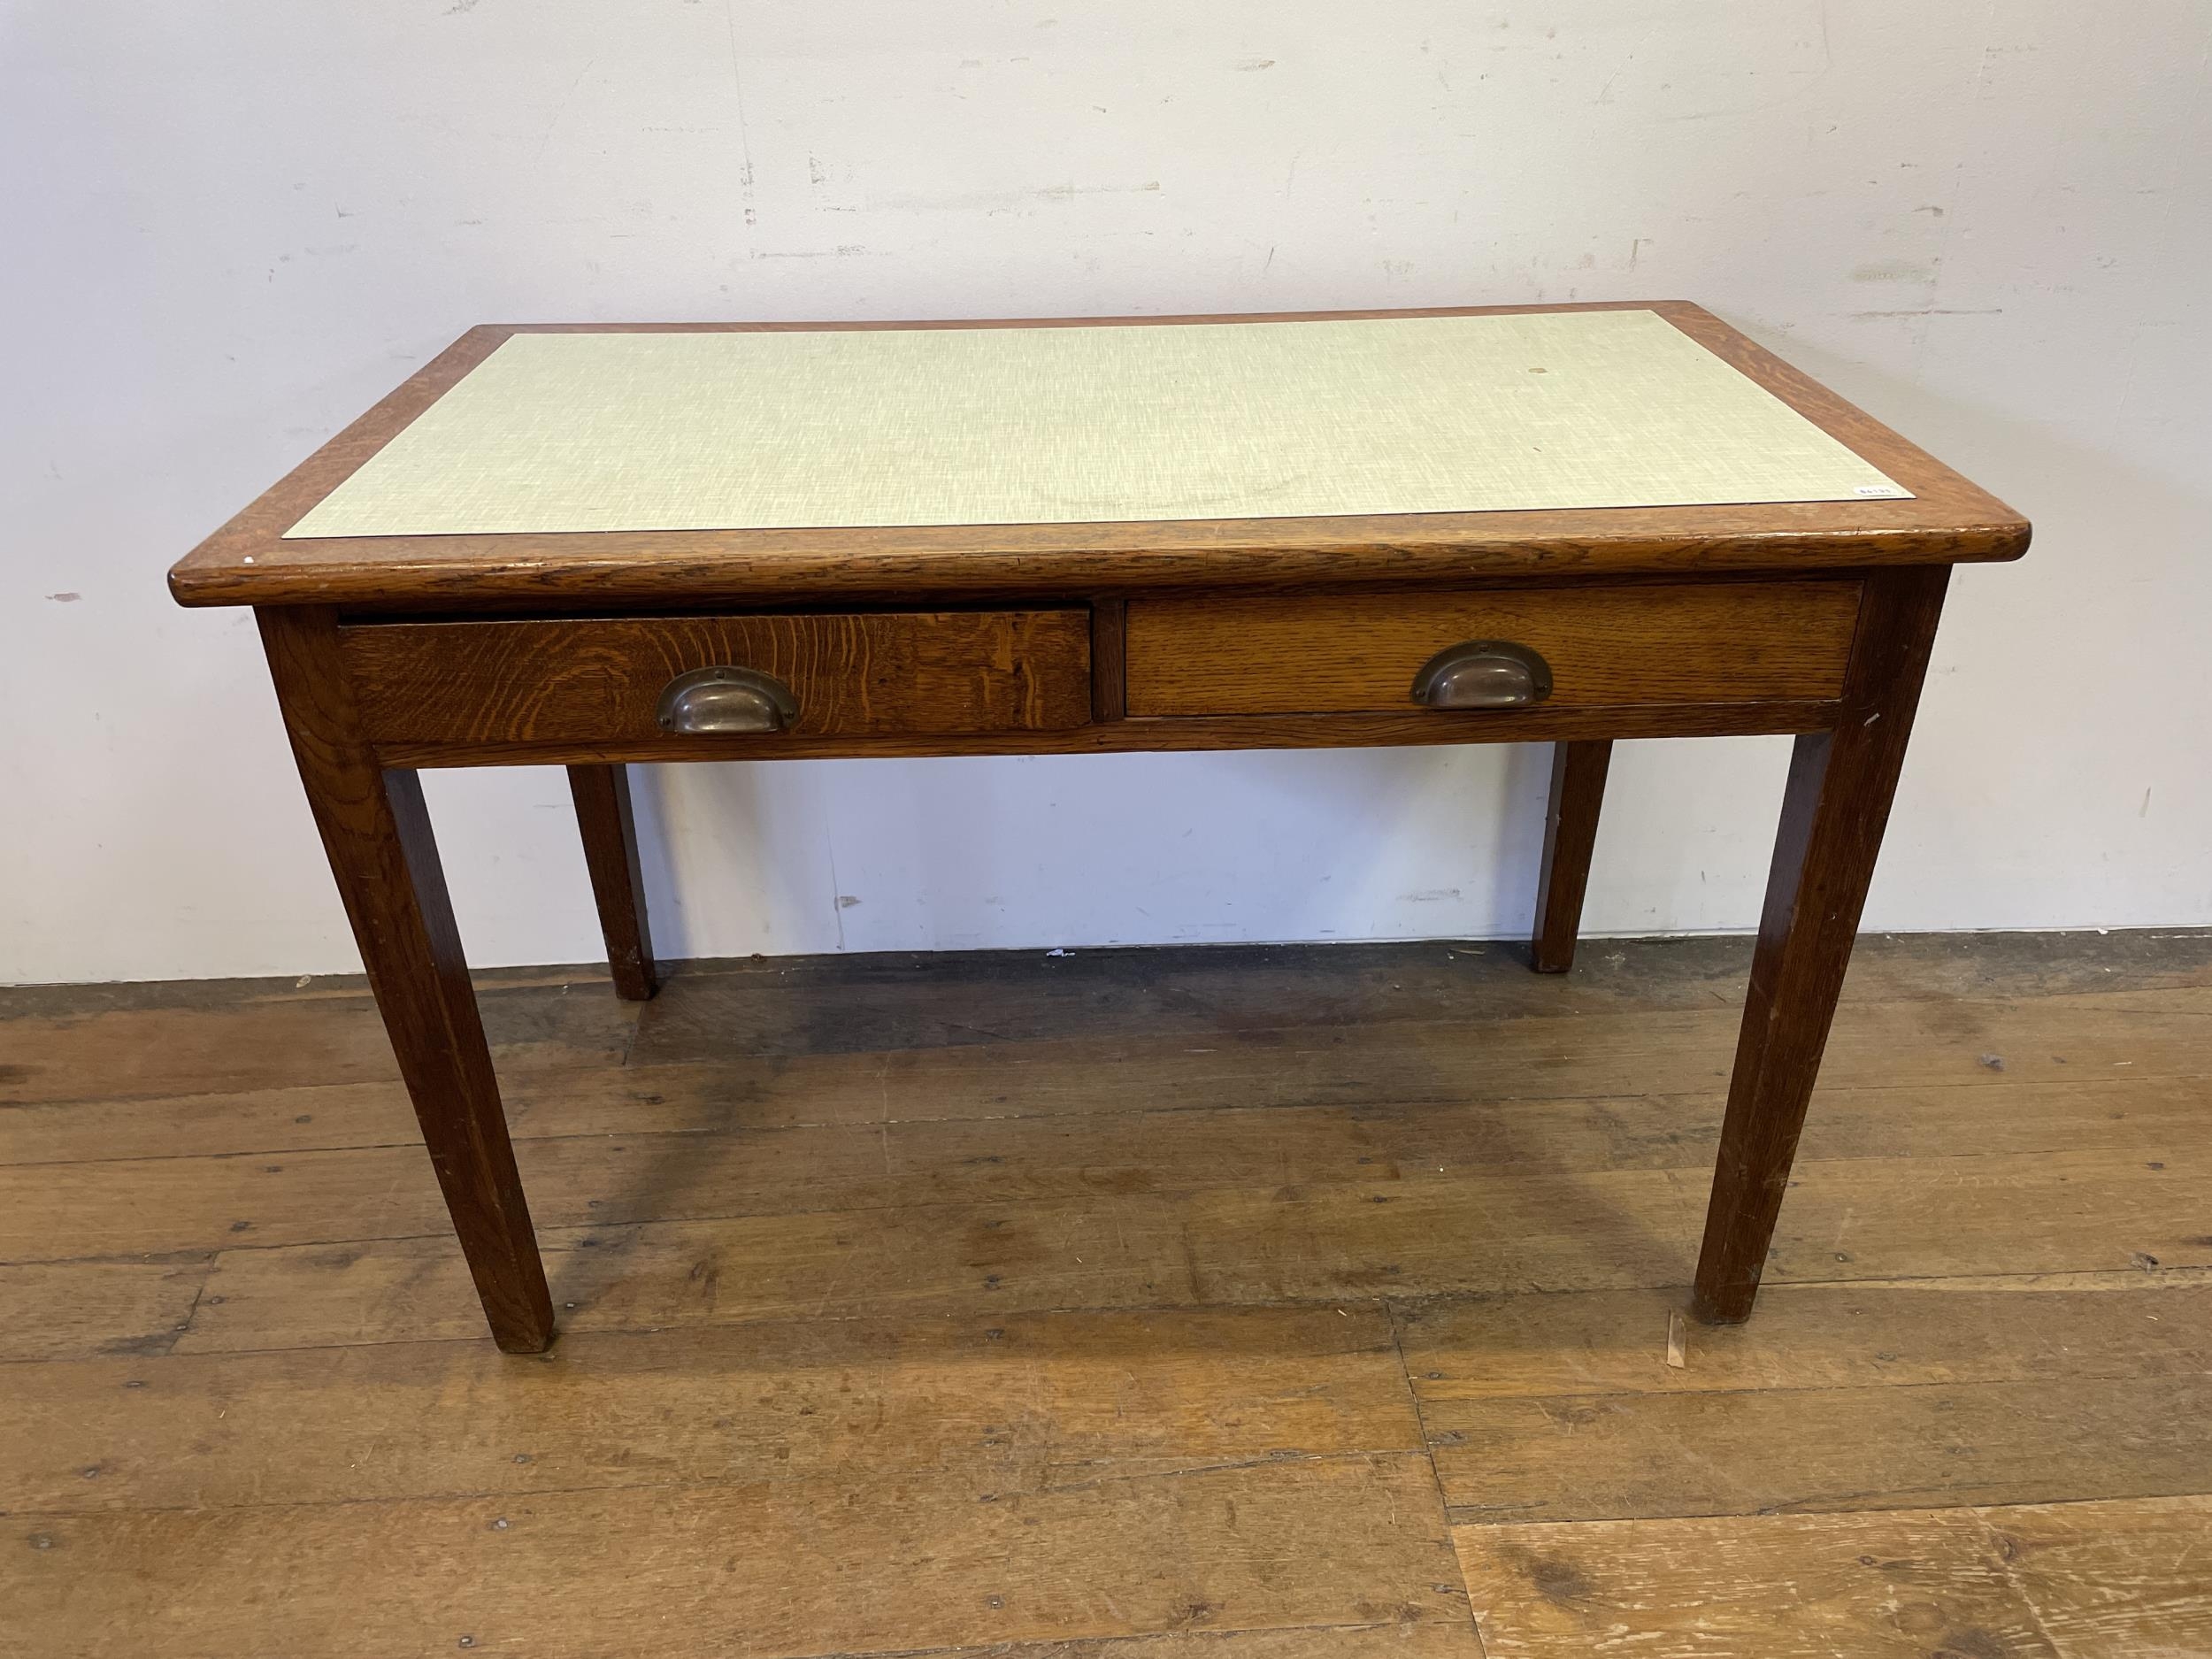 An oak desk, 122 cm wide